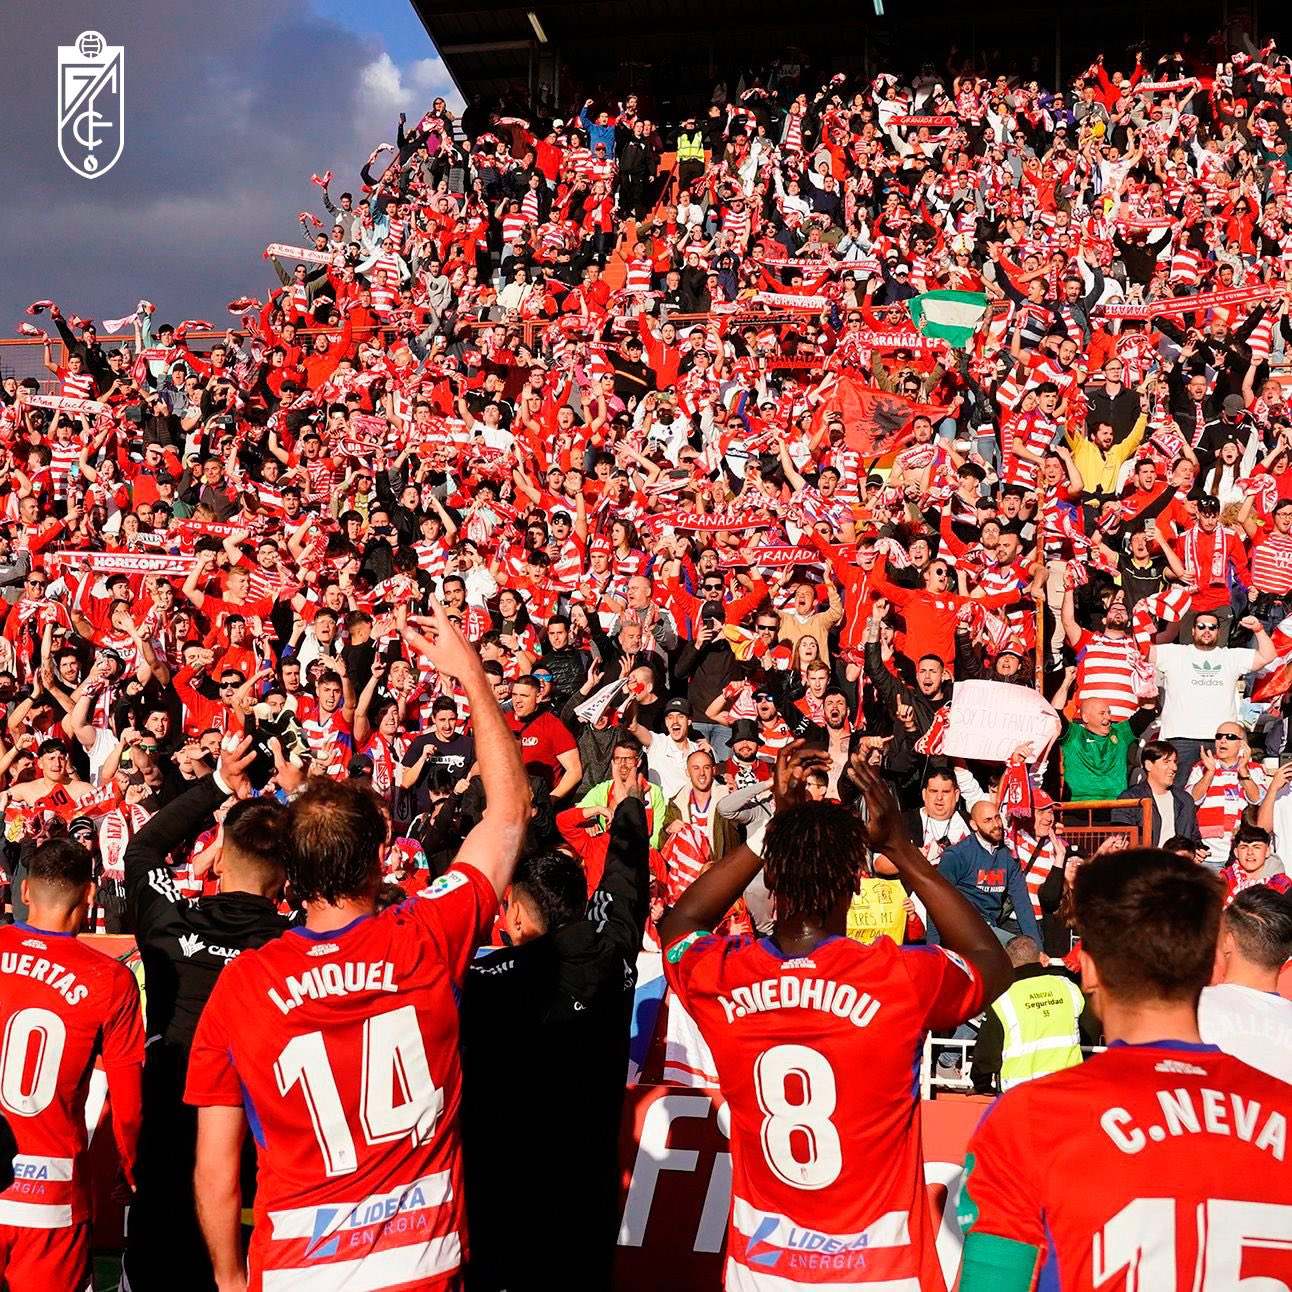 Equipo y afición celebraron la victoria en Albacete (@GranadaCF)